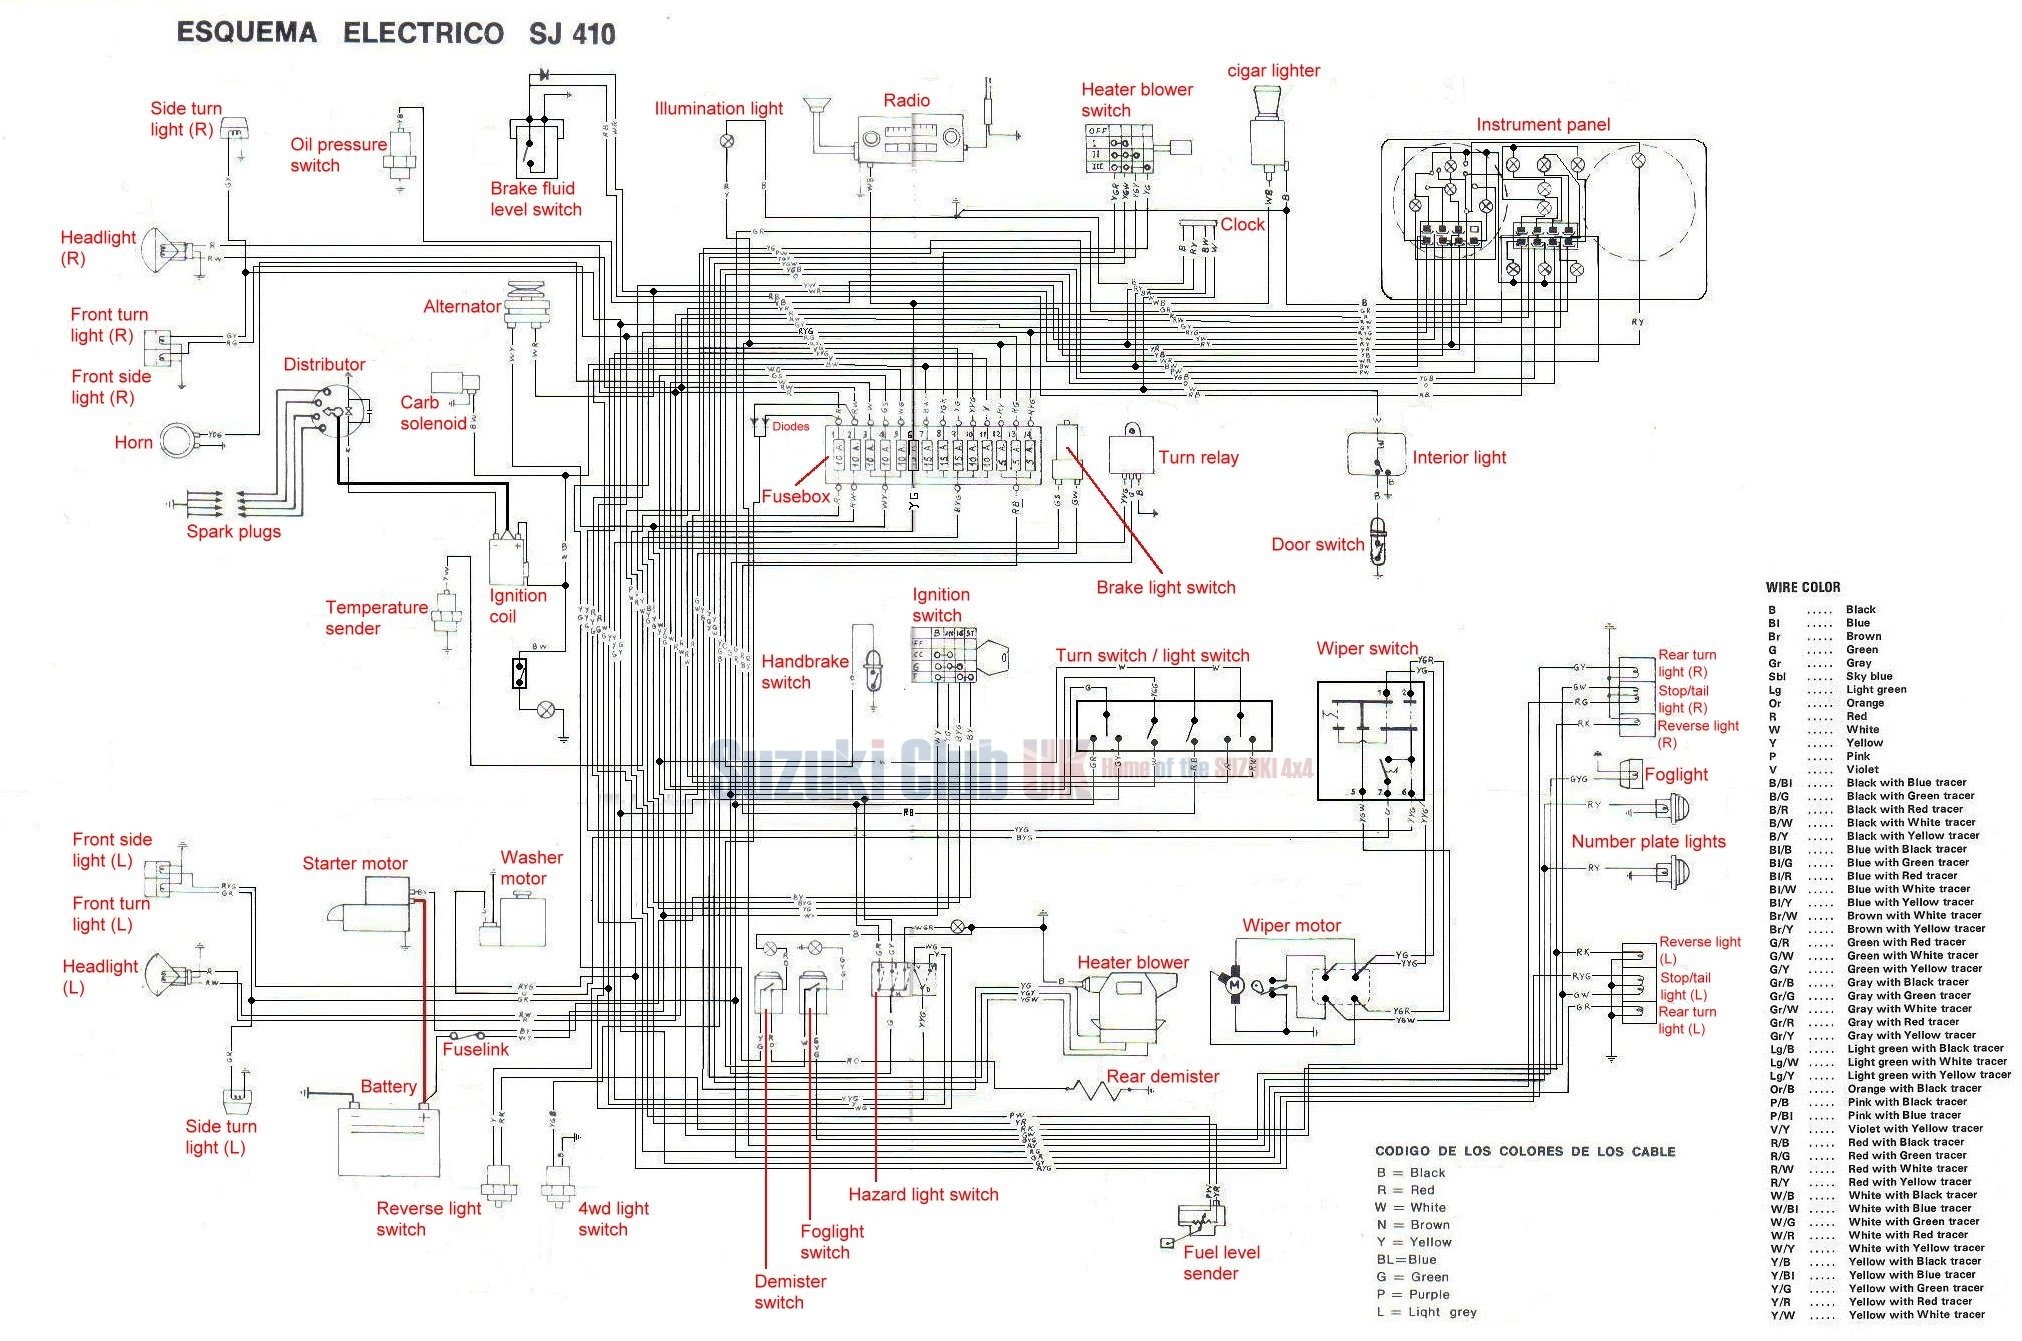 Electronic Ignition Wiring Diagram Suzuki Samurai - Wiring Diagram